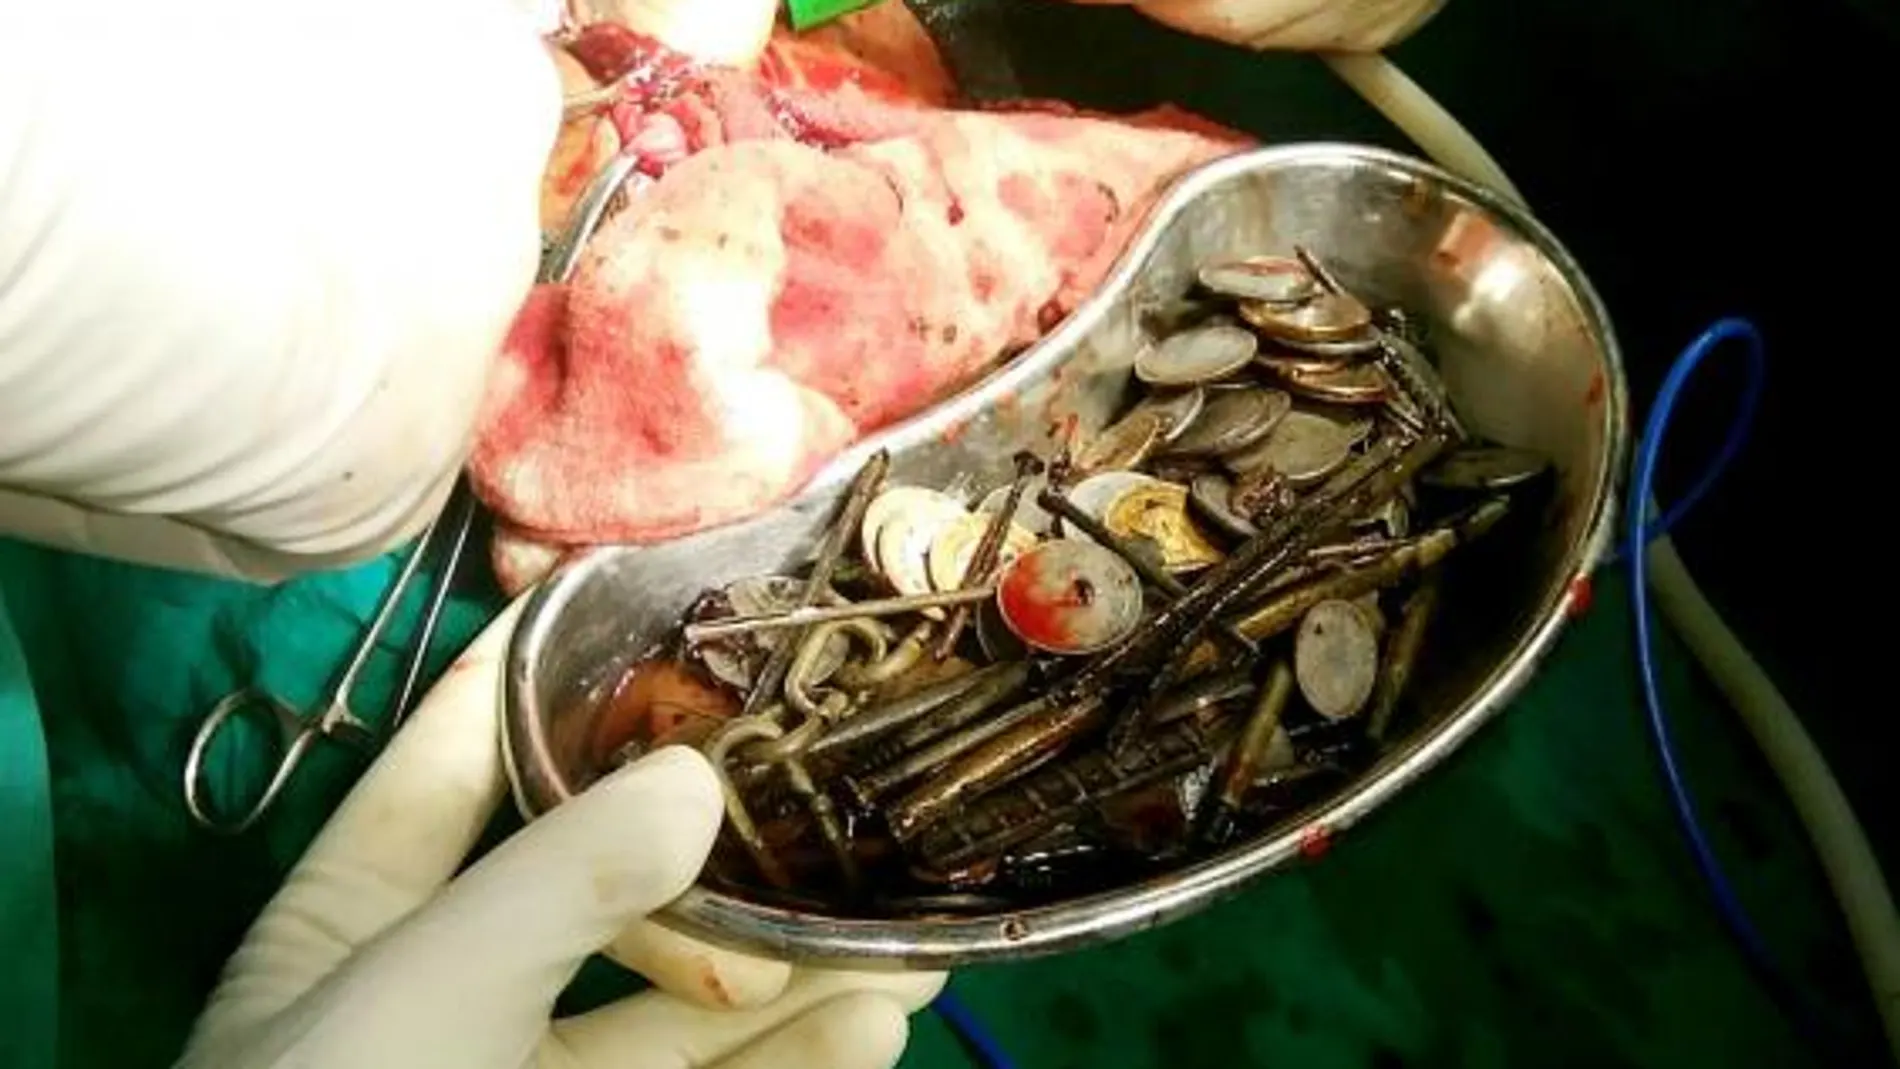 Cientos de objetos de metales extraídos del estómago del paciente